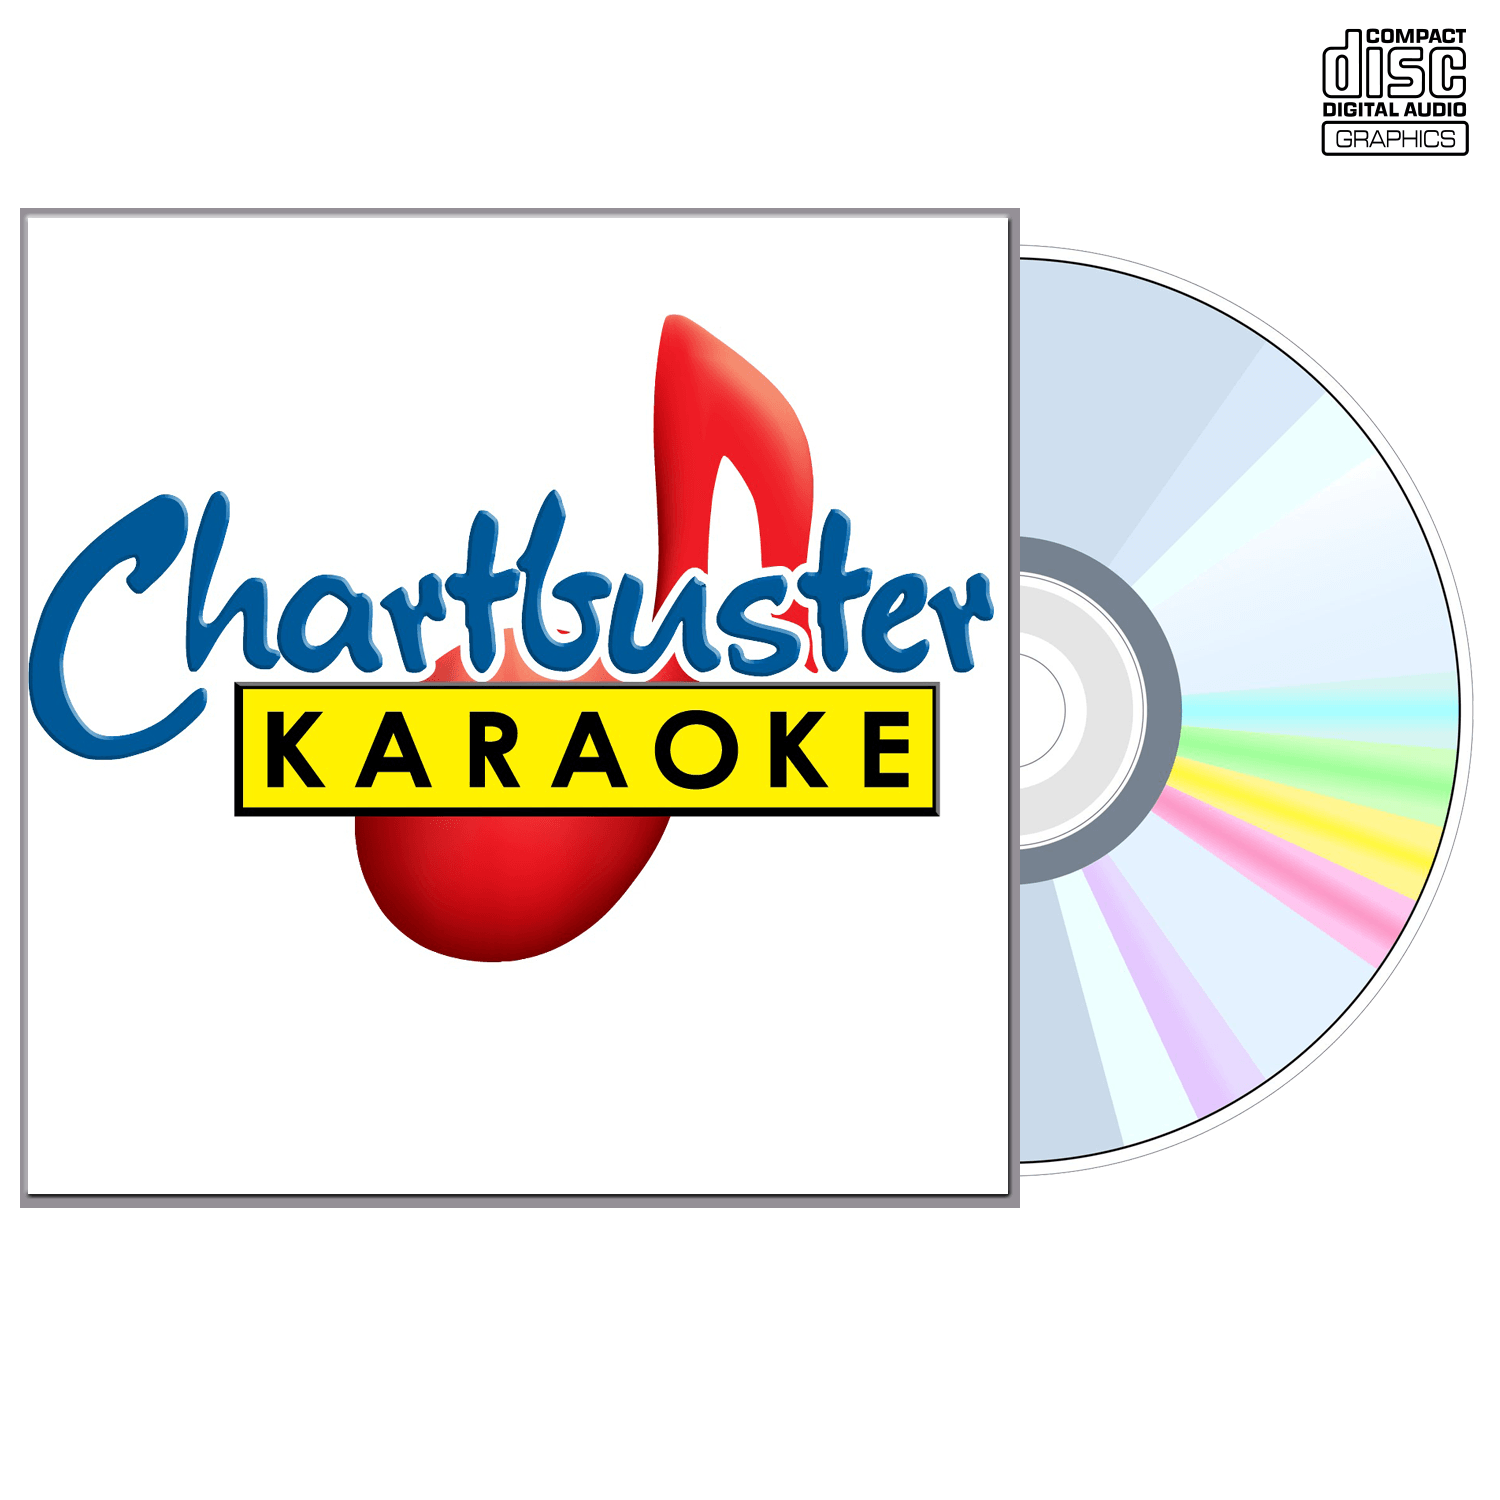 Hinder - CD+G - Chartbuster Karaoke - Karaoke Home Entertainment